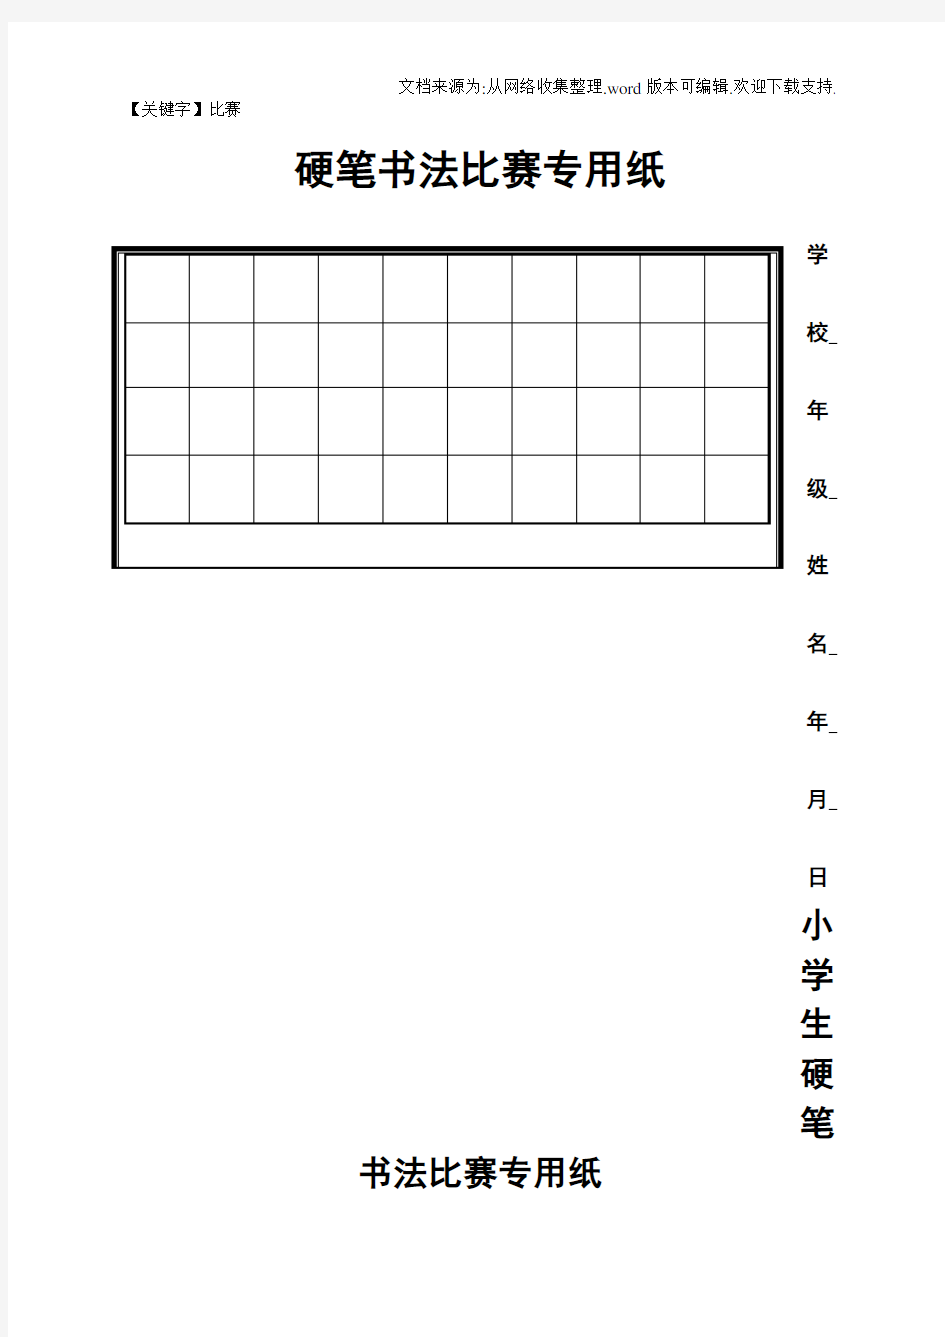 【比赛】硬笔书法比赛专用纸模板齐全29343